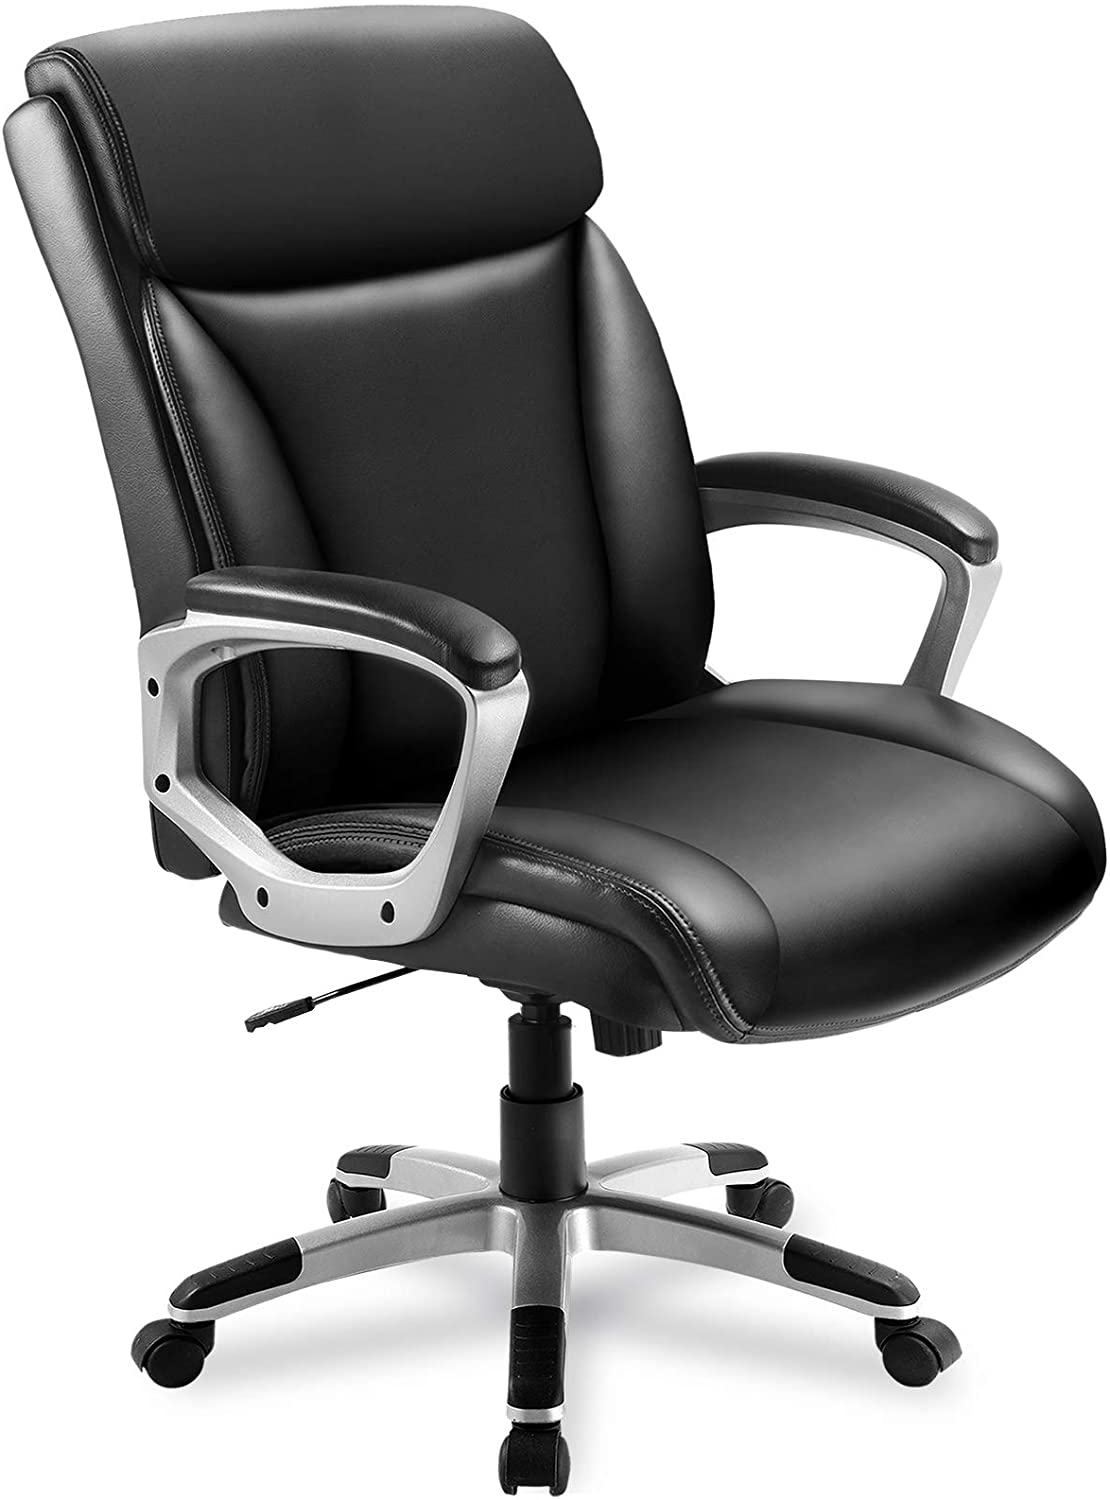 ComHoma Executive Office Chair High Back Comfortable ...